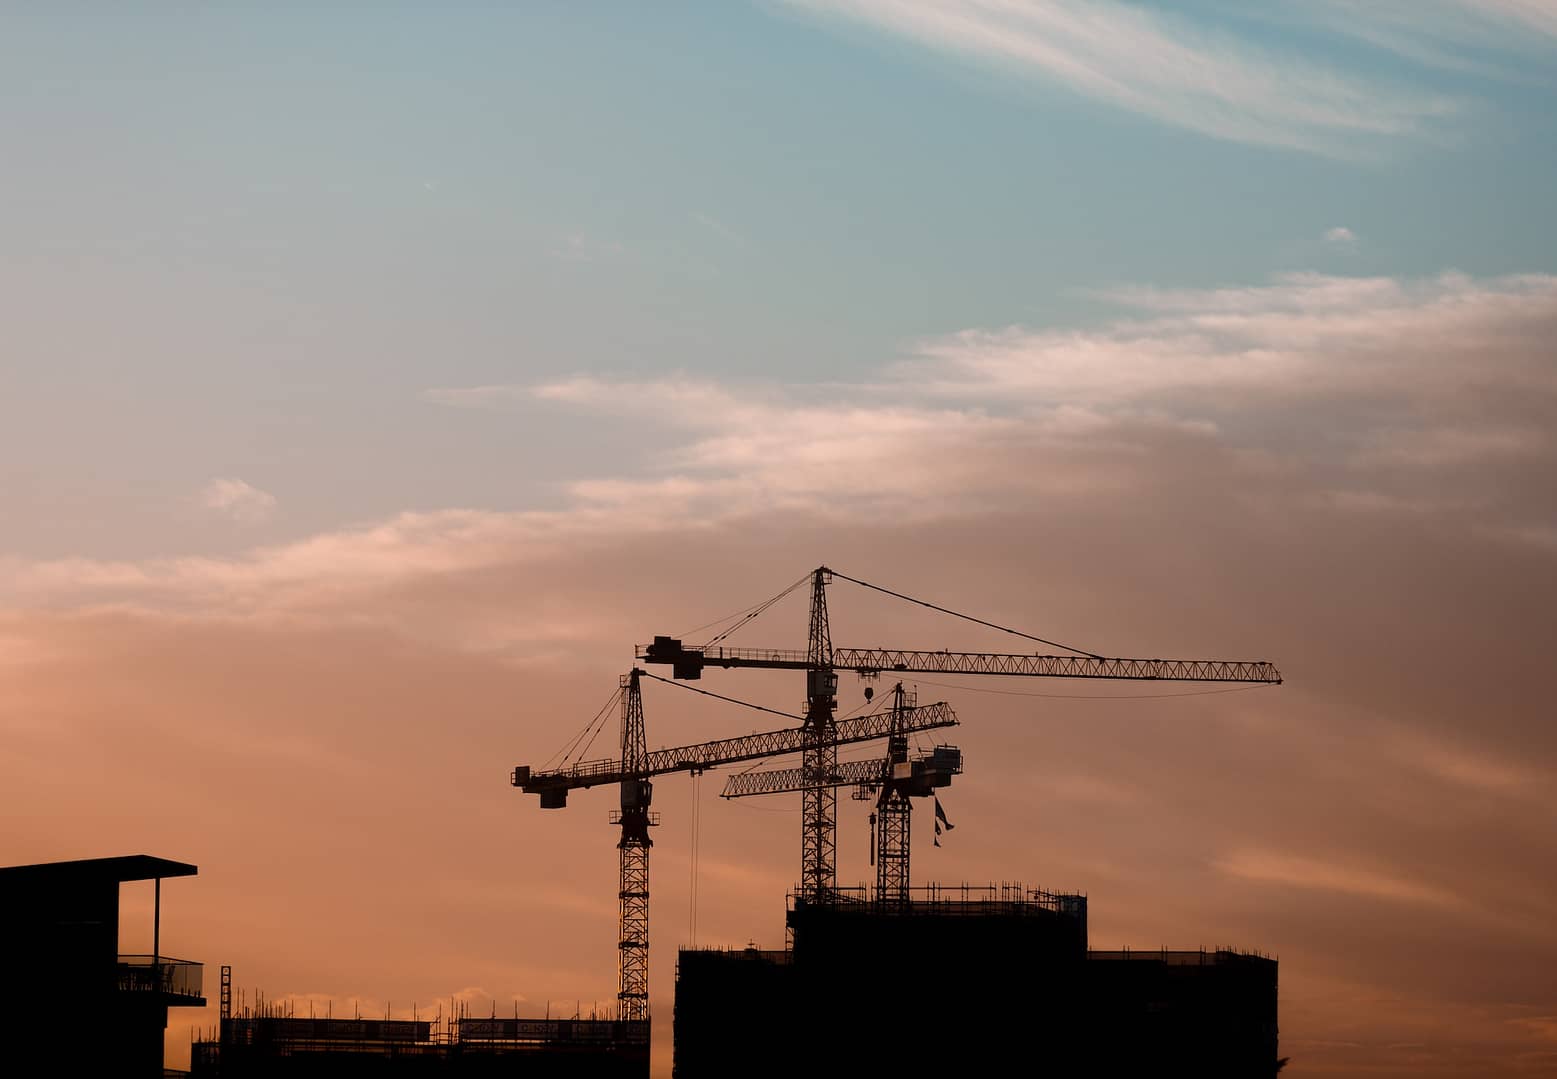 Three cranes at a construction site